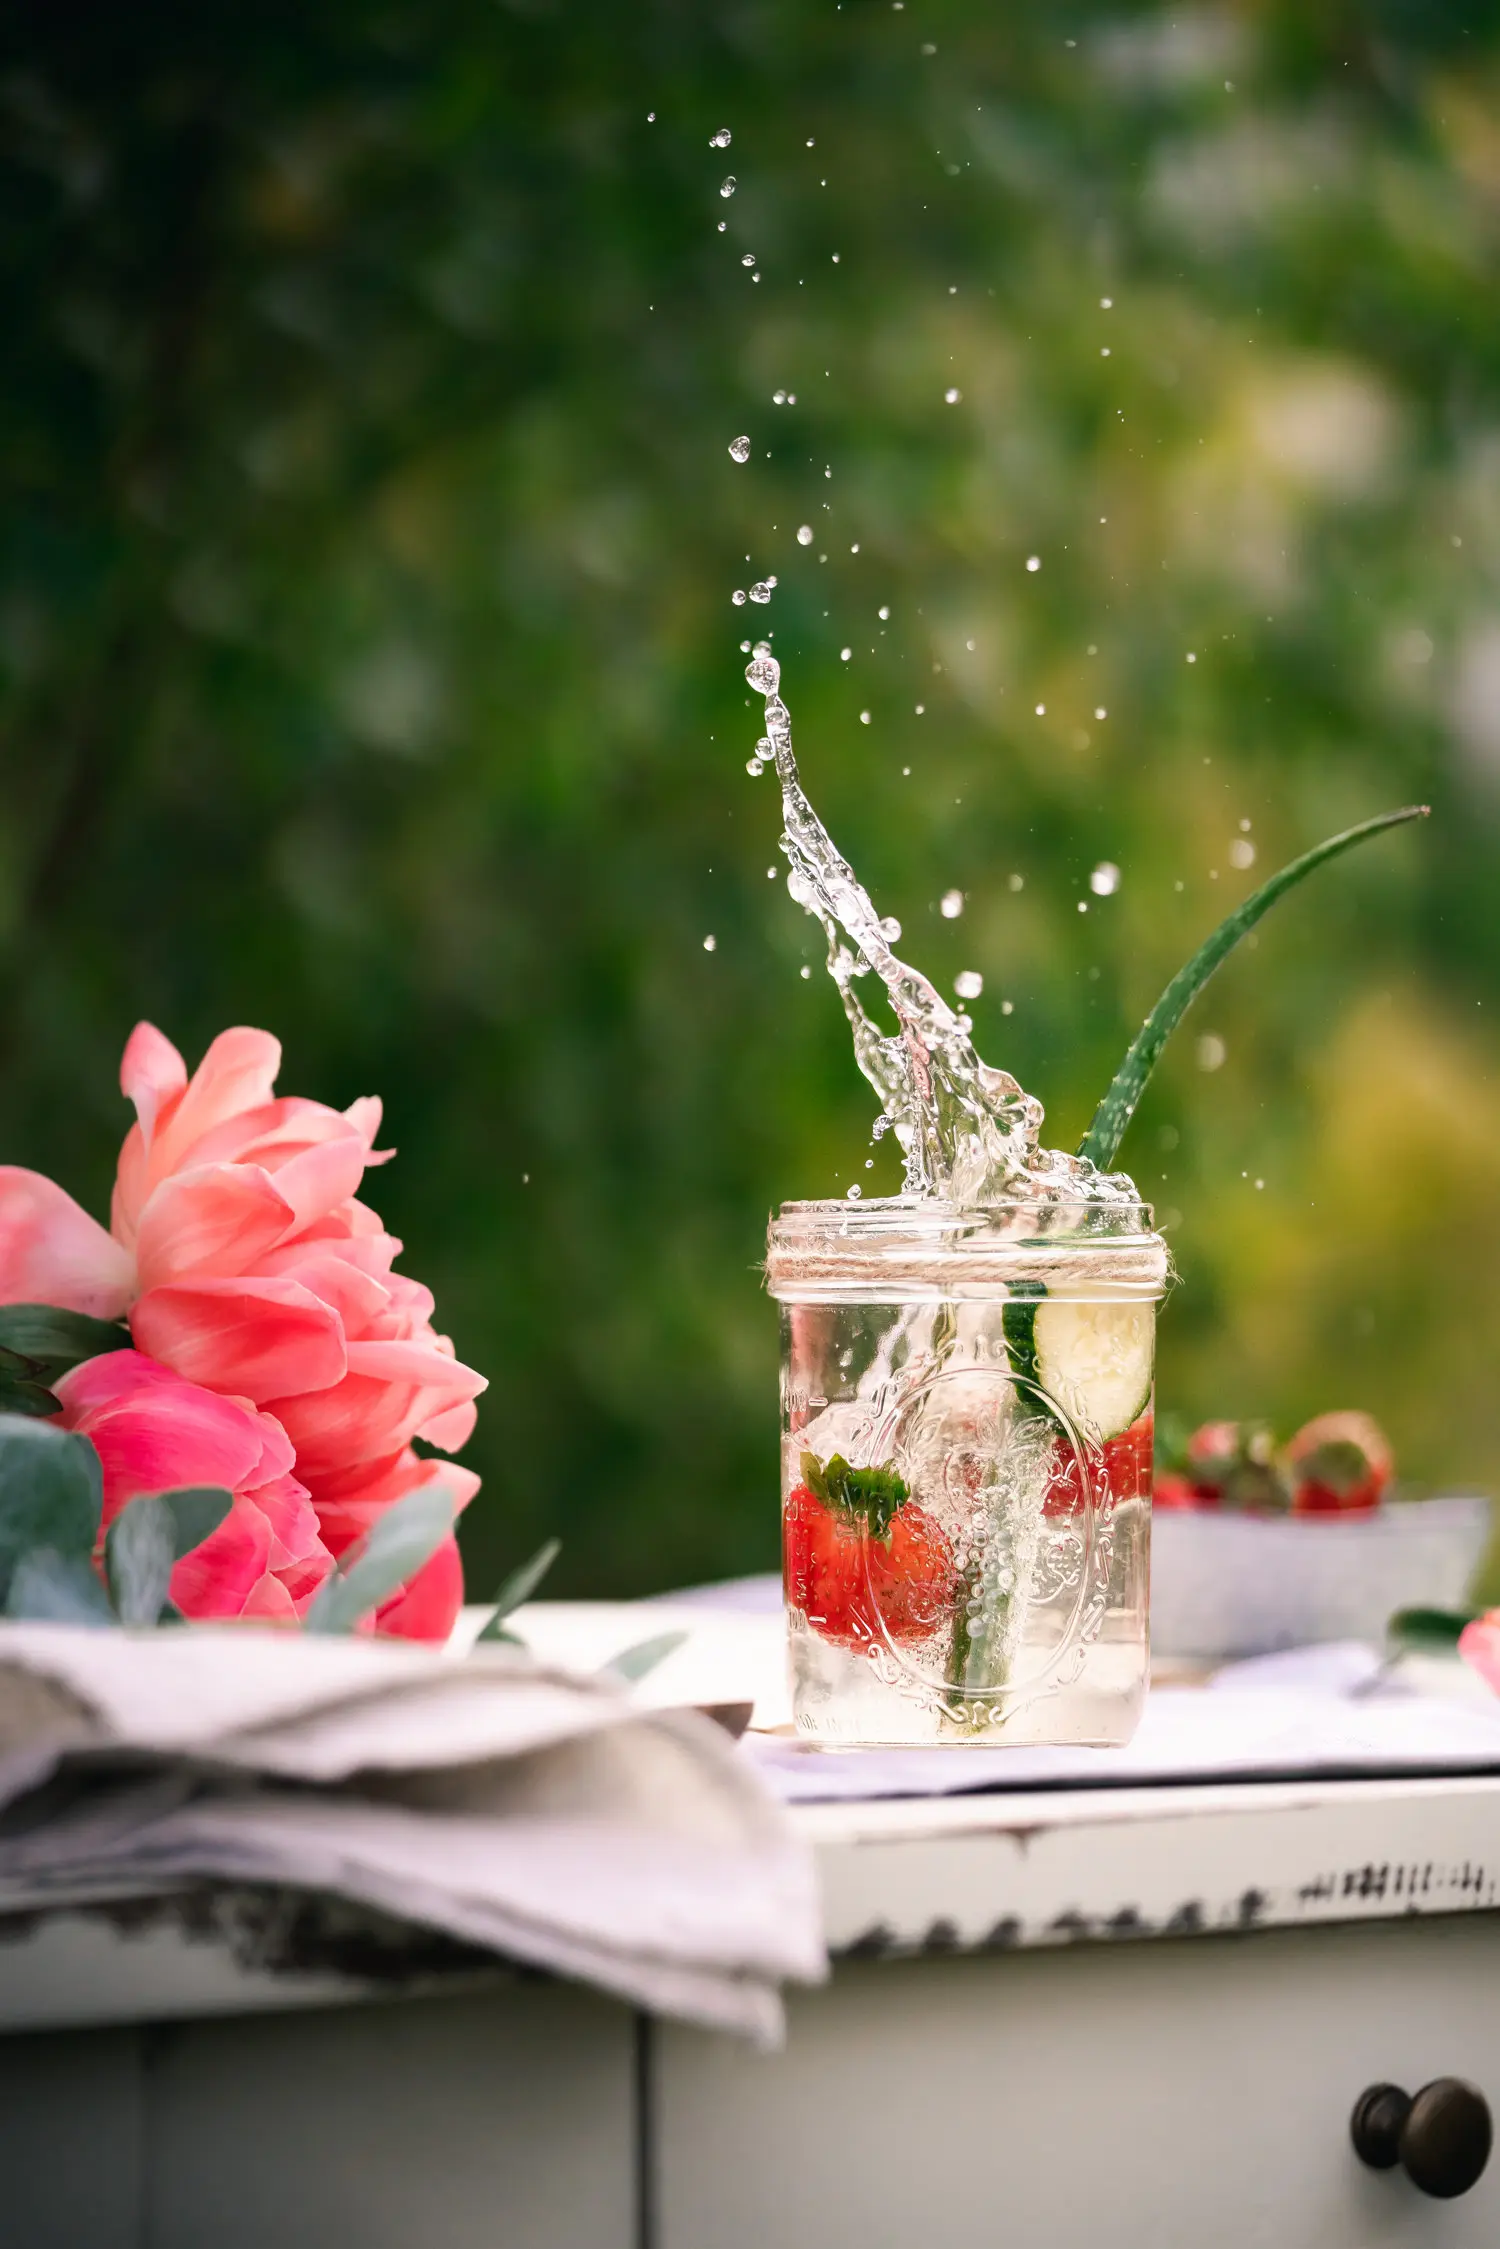 Wasser mit Geschmack :Erdbeere ins Glas gefallen mit Wasserspritzern